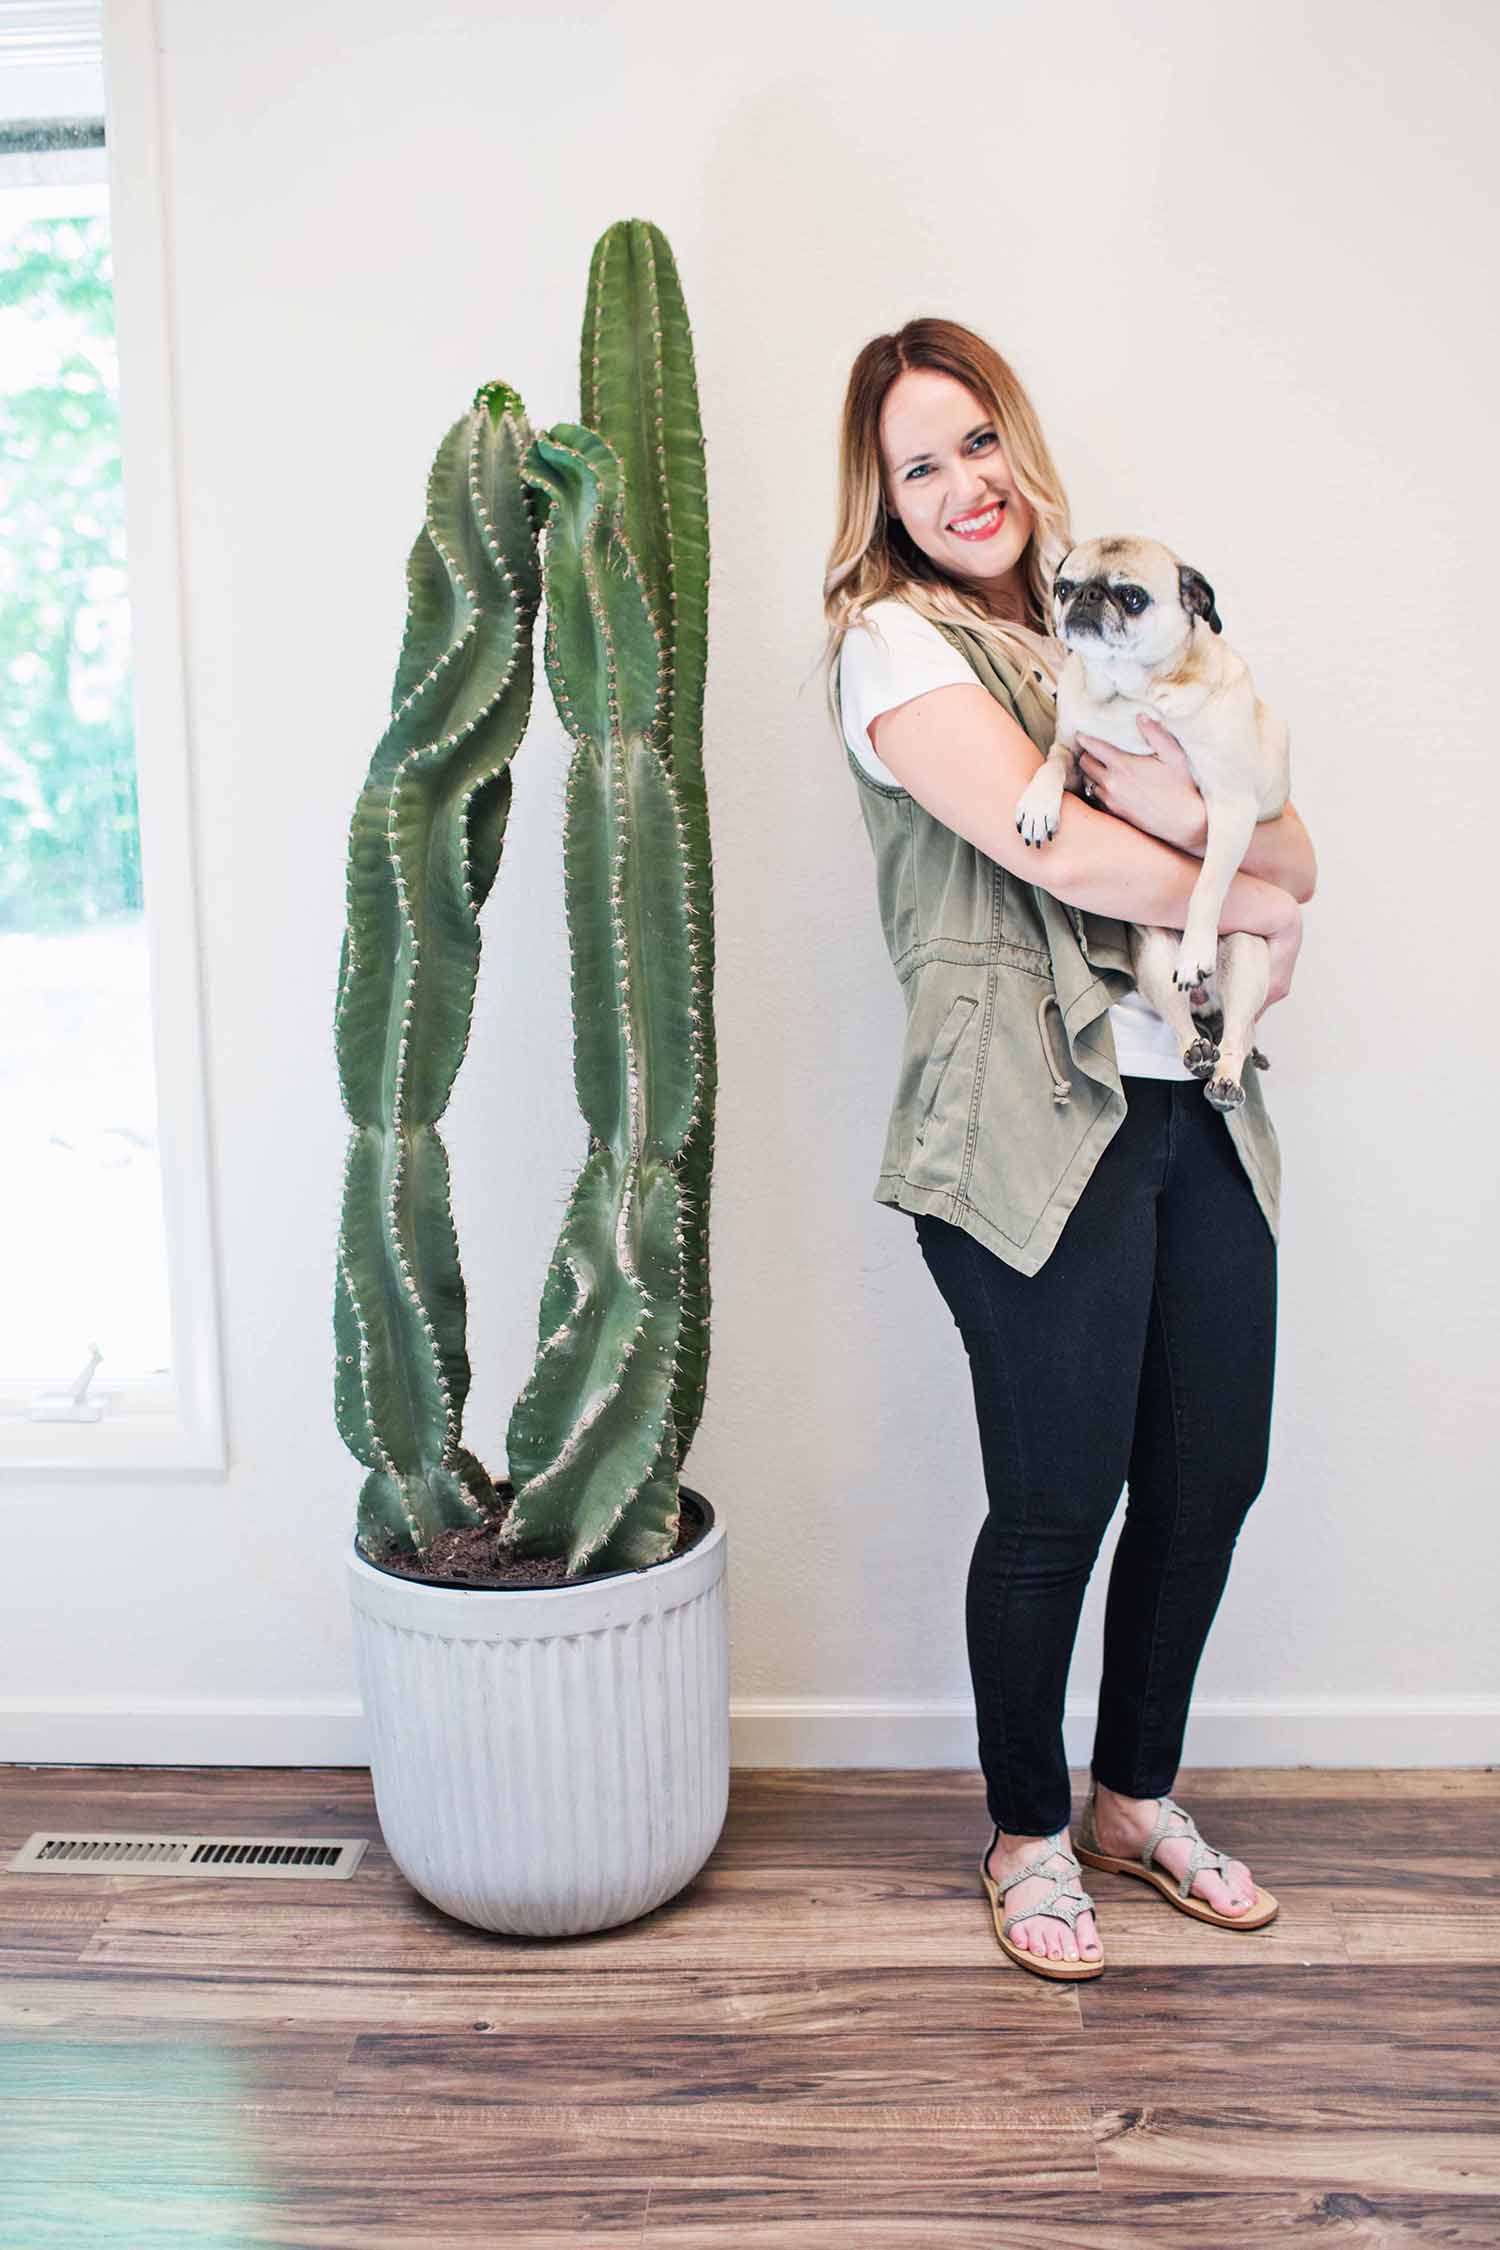 Emma's giant cactus